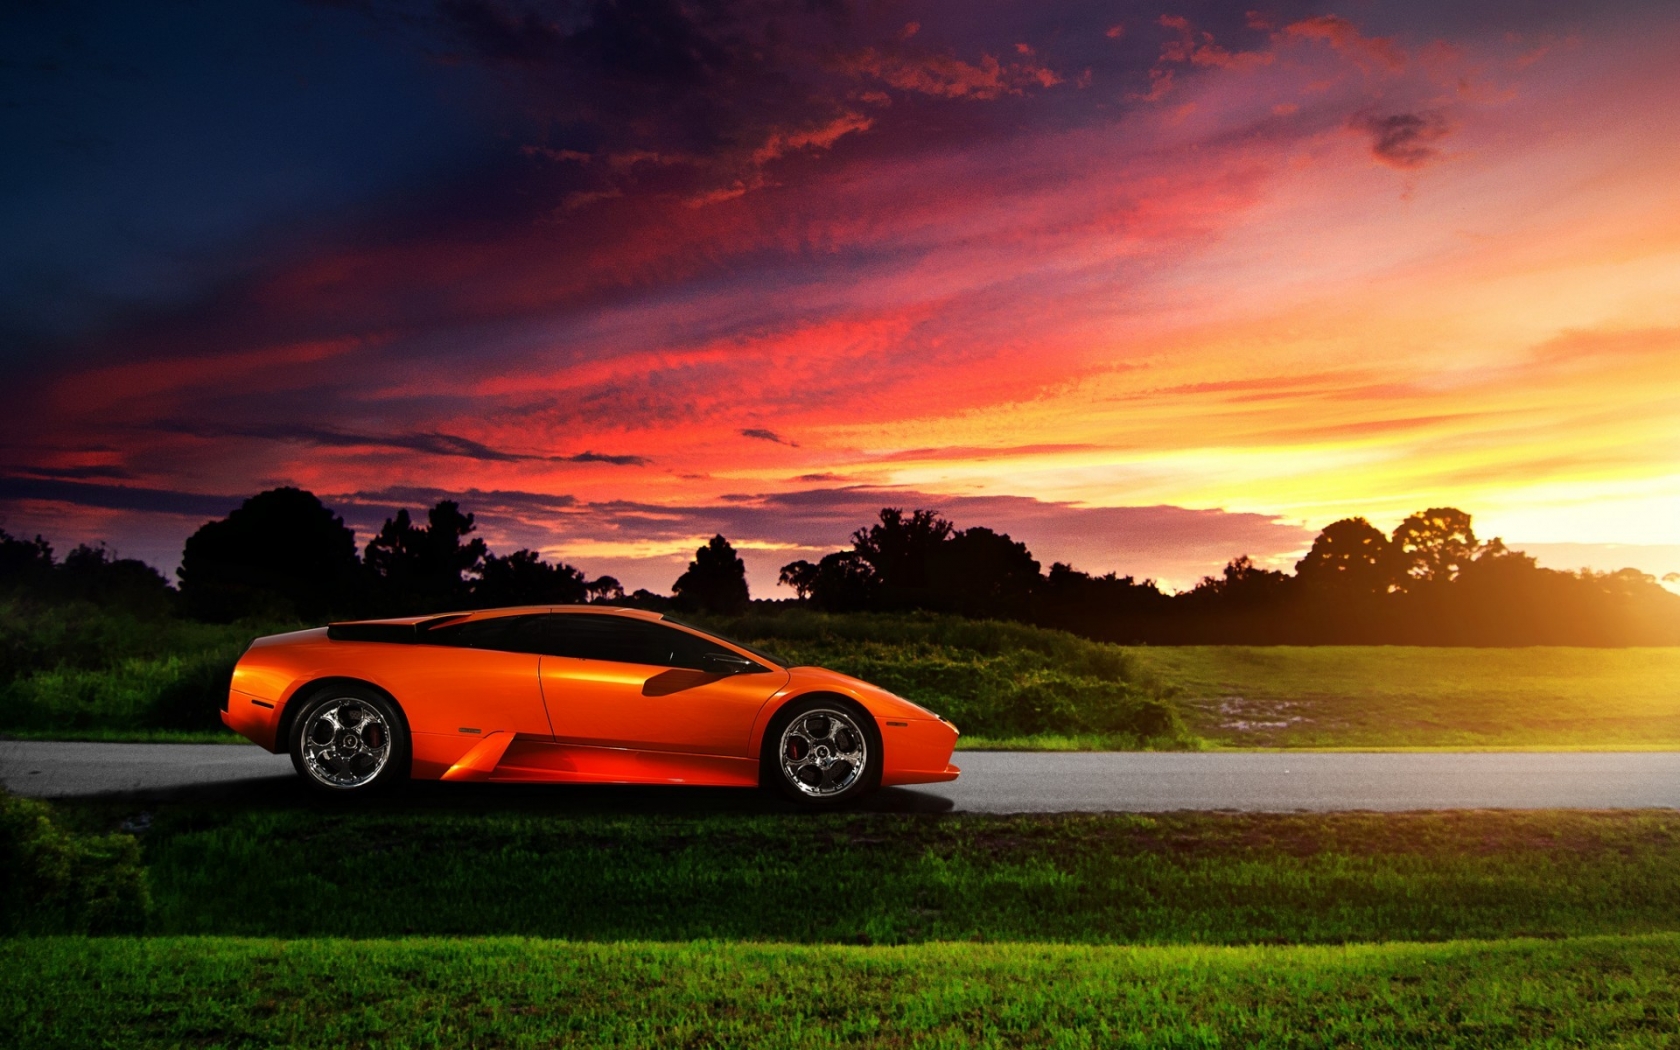 Lamborghini Murcielago Orange for 1680 x 1050 widescreen resolution